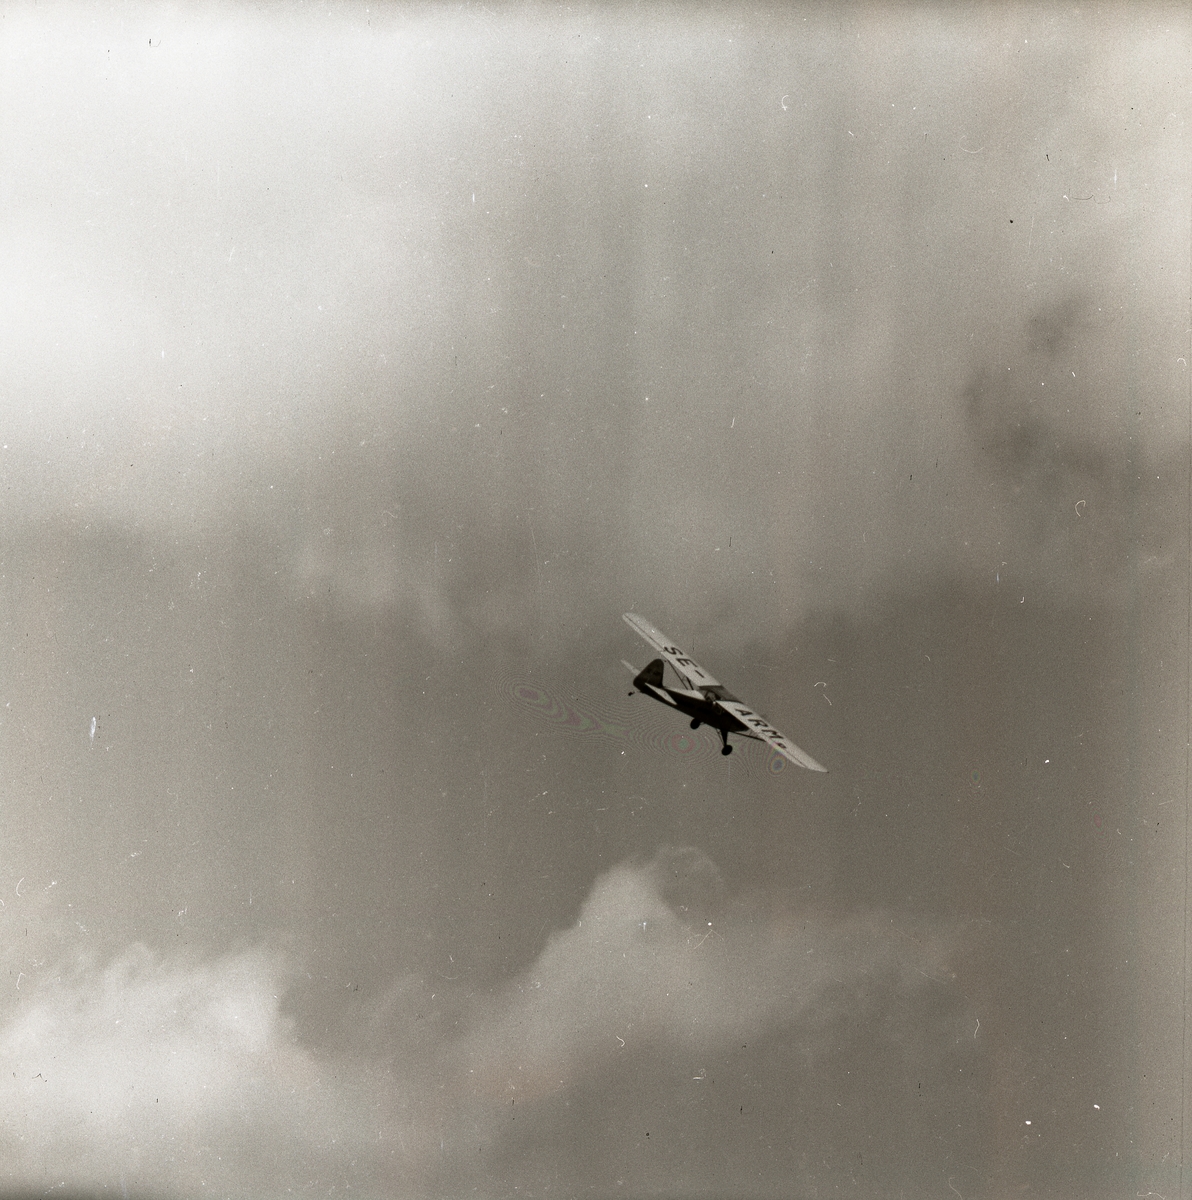 Flygplan bland molnen, Fieseler storch FI 156. Fotograferat på midsommardagen 25 juni 1955.